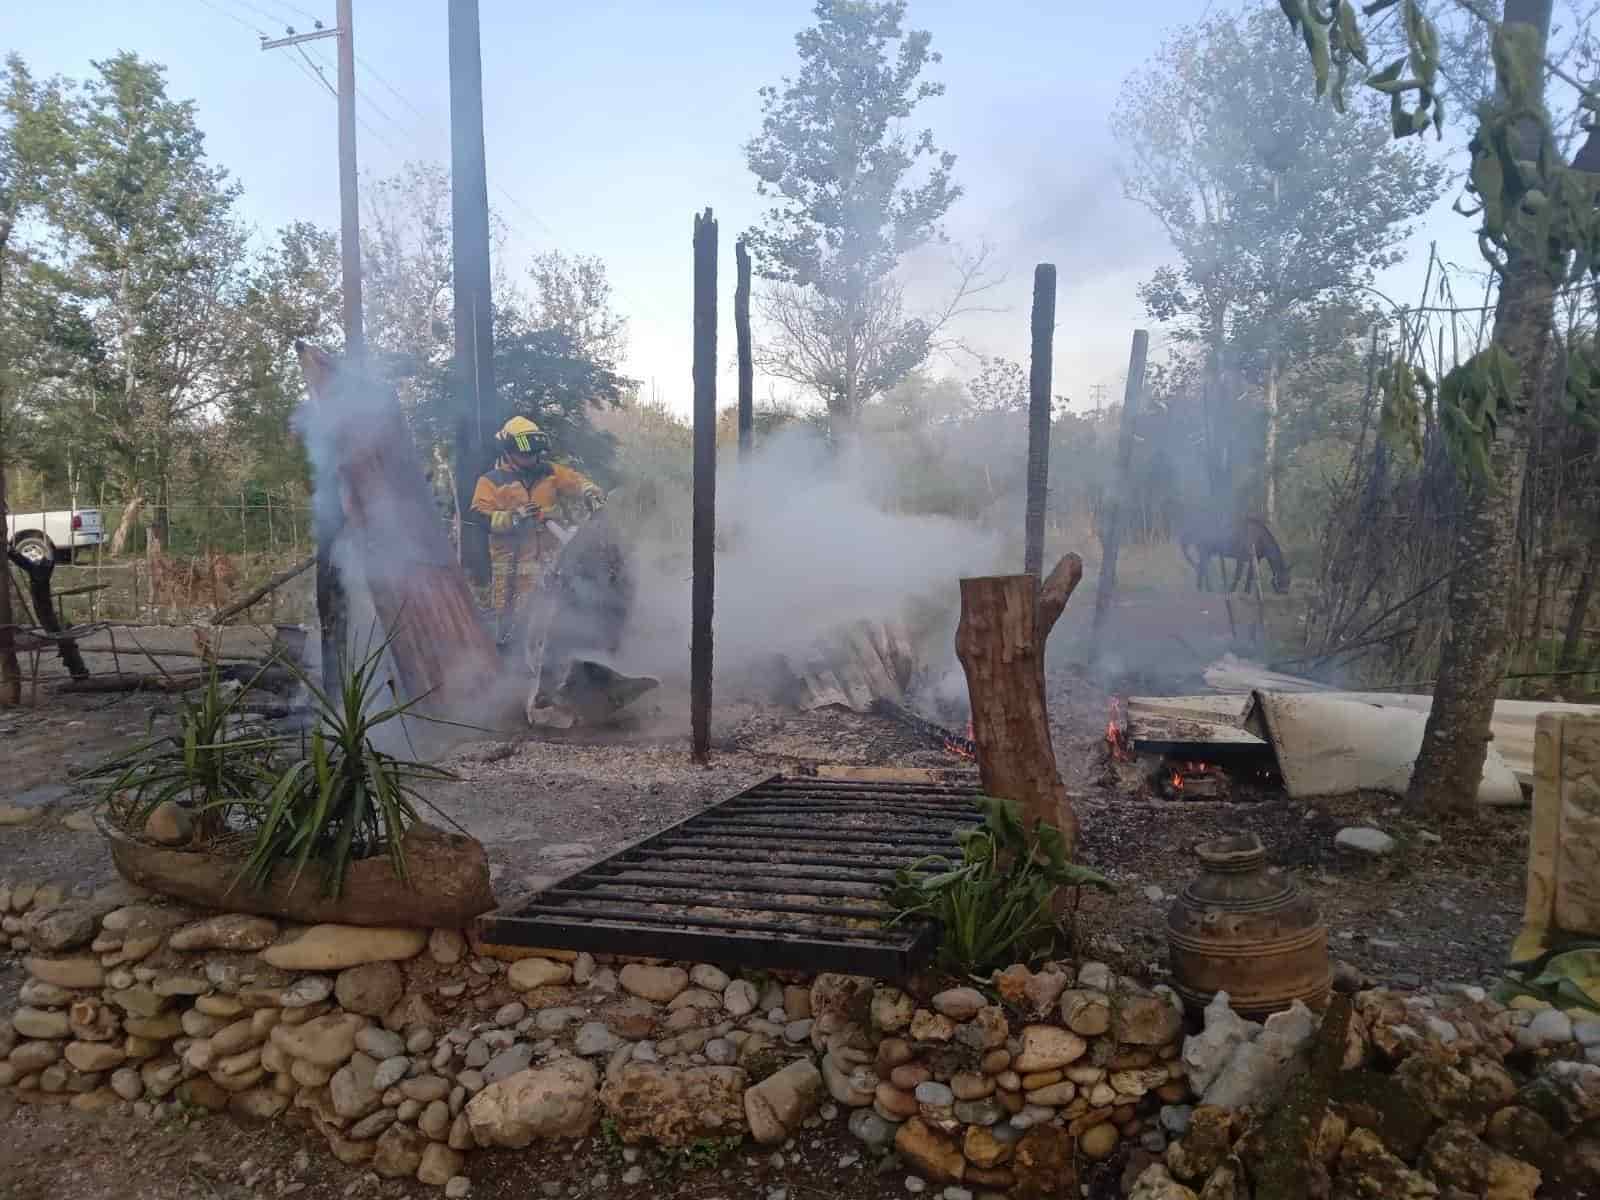 Una intensa movilización de los puestos de socorro se registró en el municipio de Montemorelos, al reportarse el incendio de una vivienda